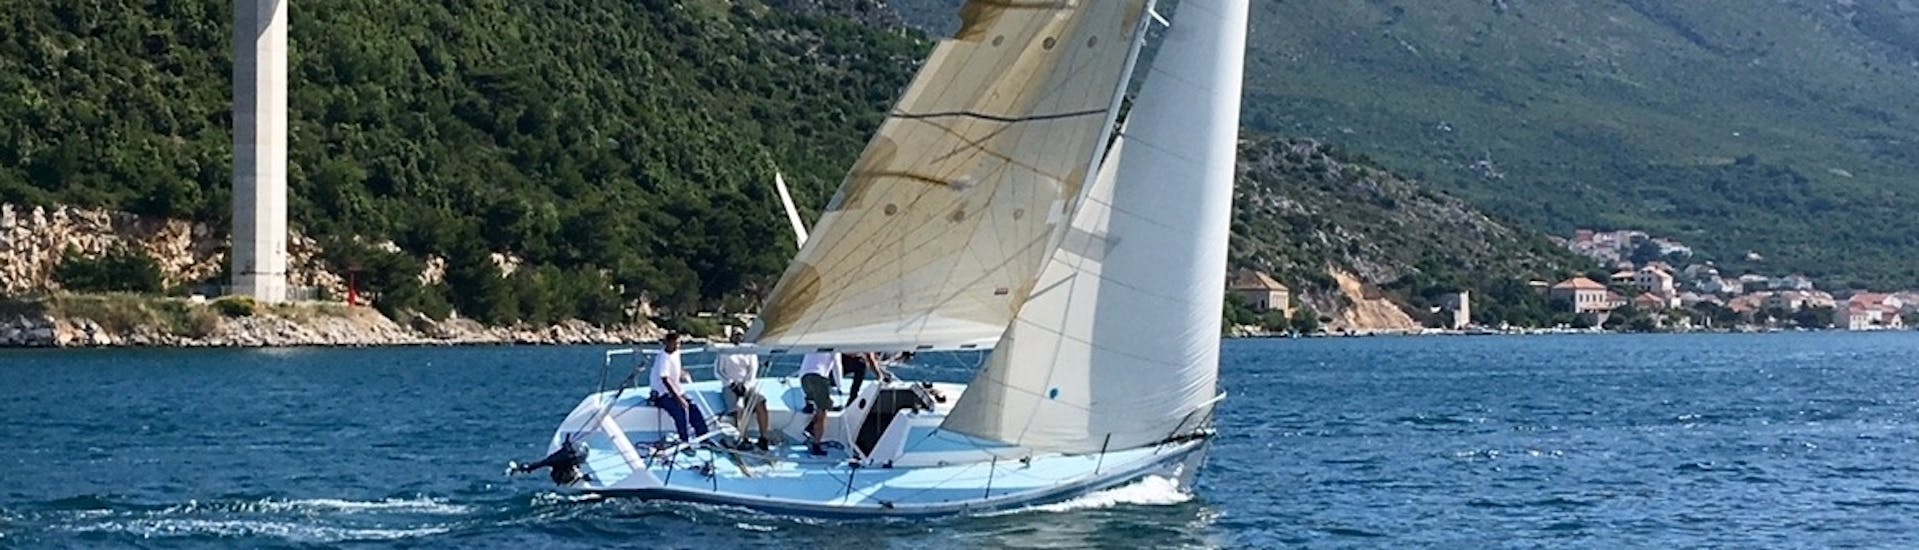 Notre voilier dans l'eau pendant une excursion privée en bateau autour des îles Elaphiti au départ de Dubrovnik avec The Day Sail Croatia.